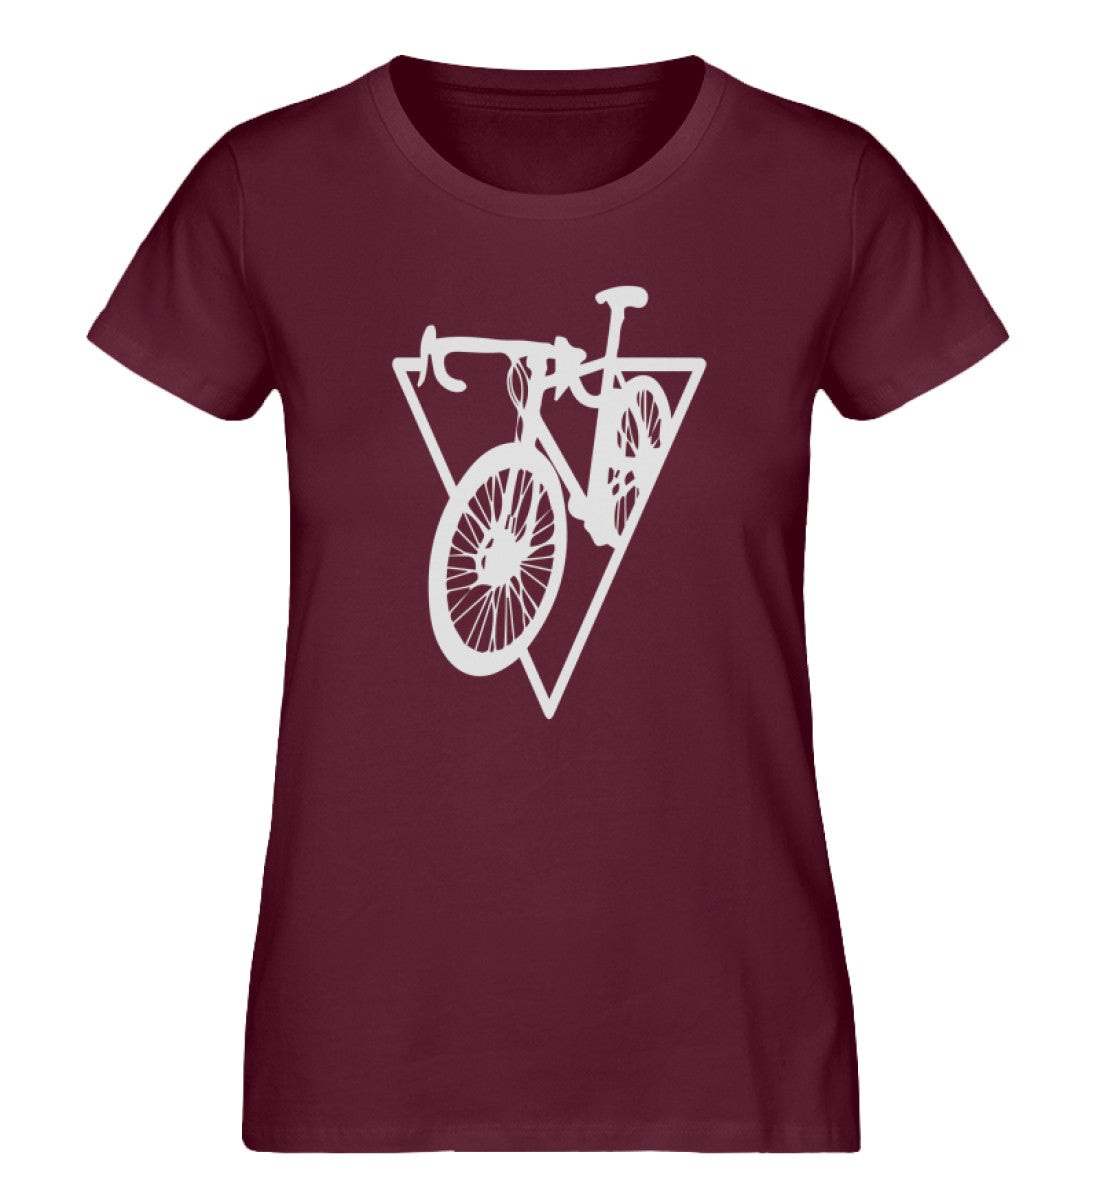 Fahrrad Geometrisch - Damen Organic T-Shirt fahrrad Weinrot